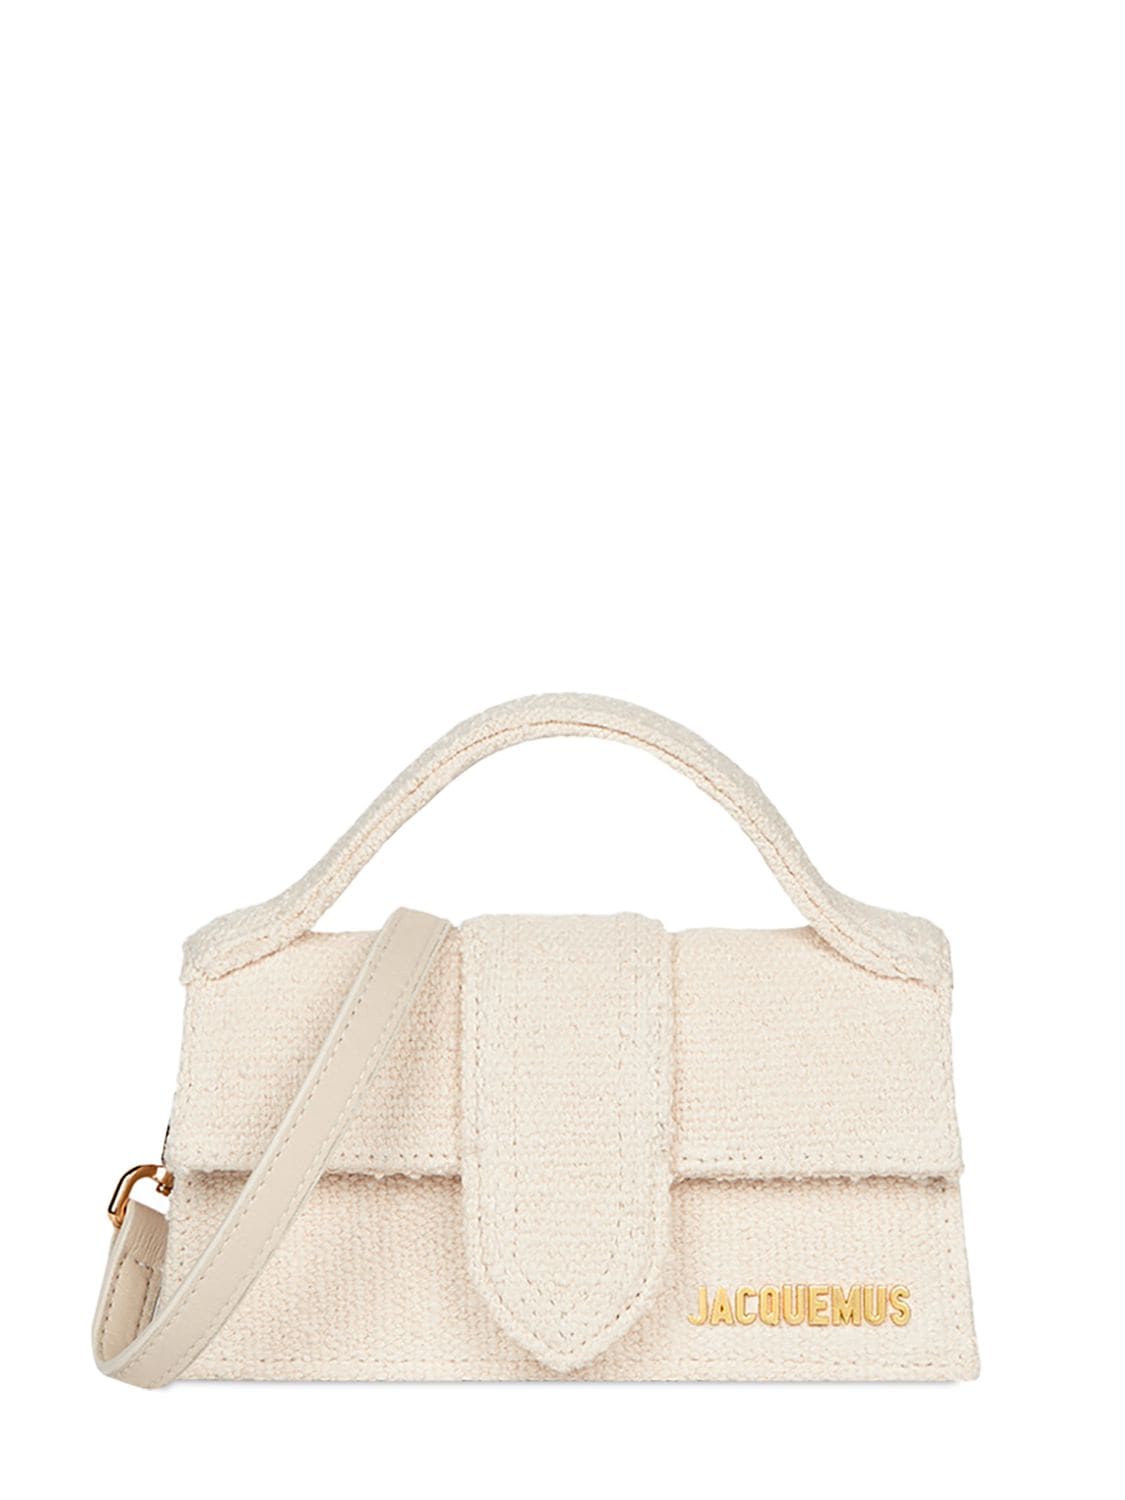 Jacquemus Le Bambino Cotton Canvas Top Handle Bag In Off-white | ModeSens